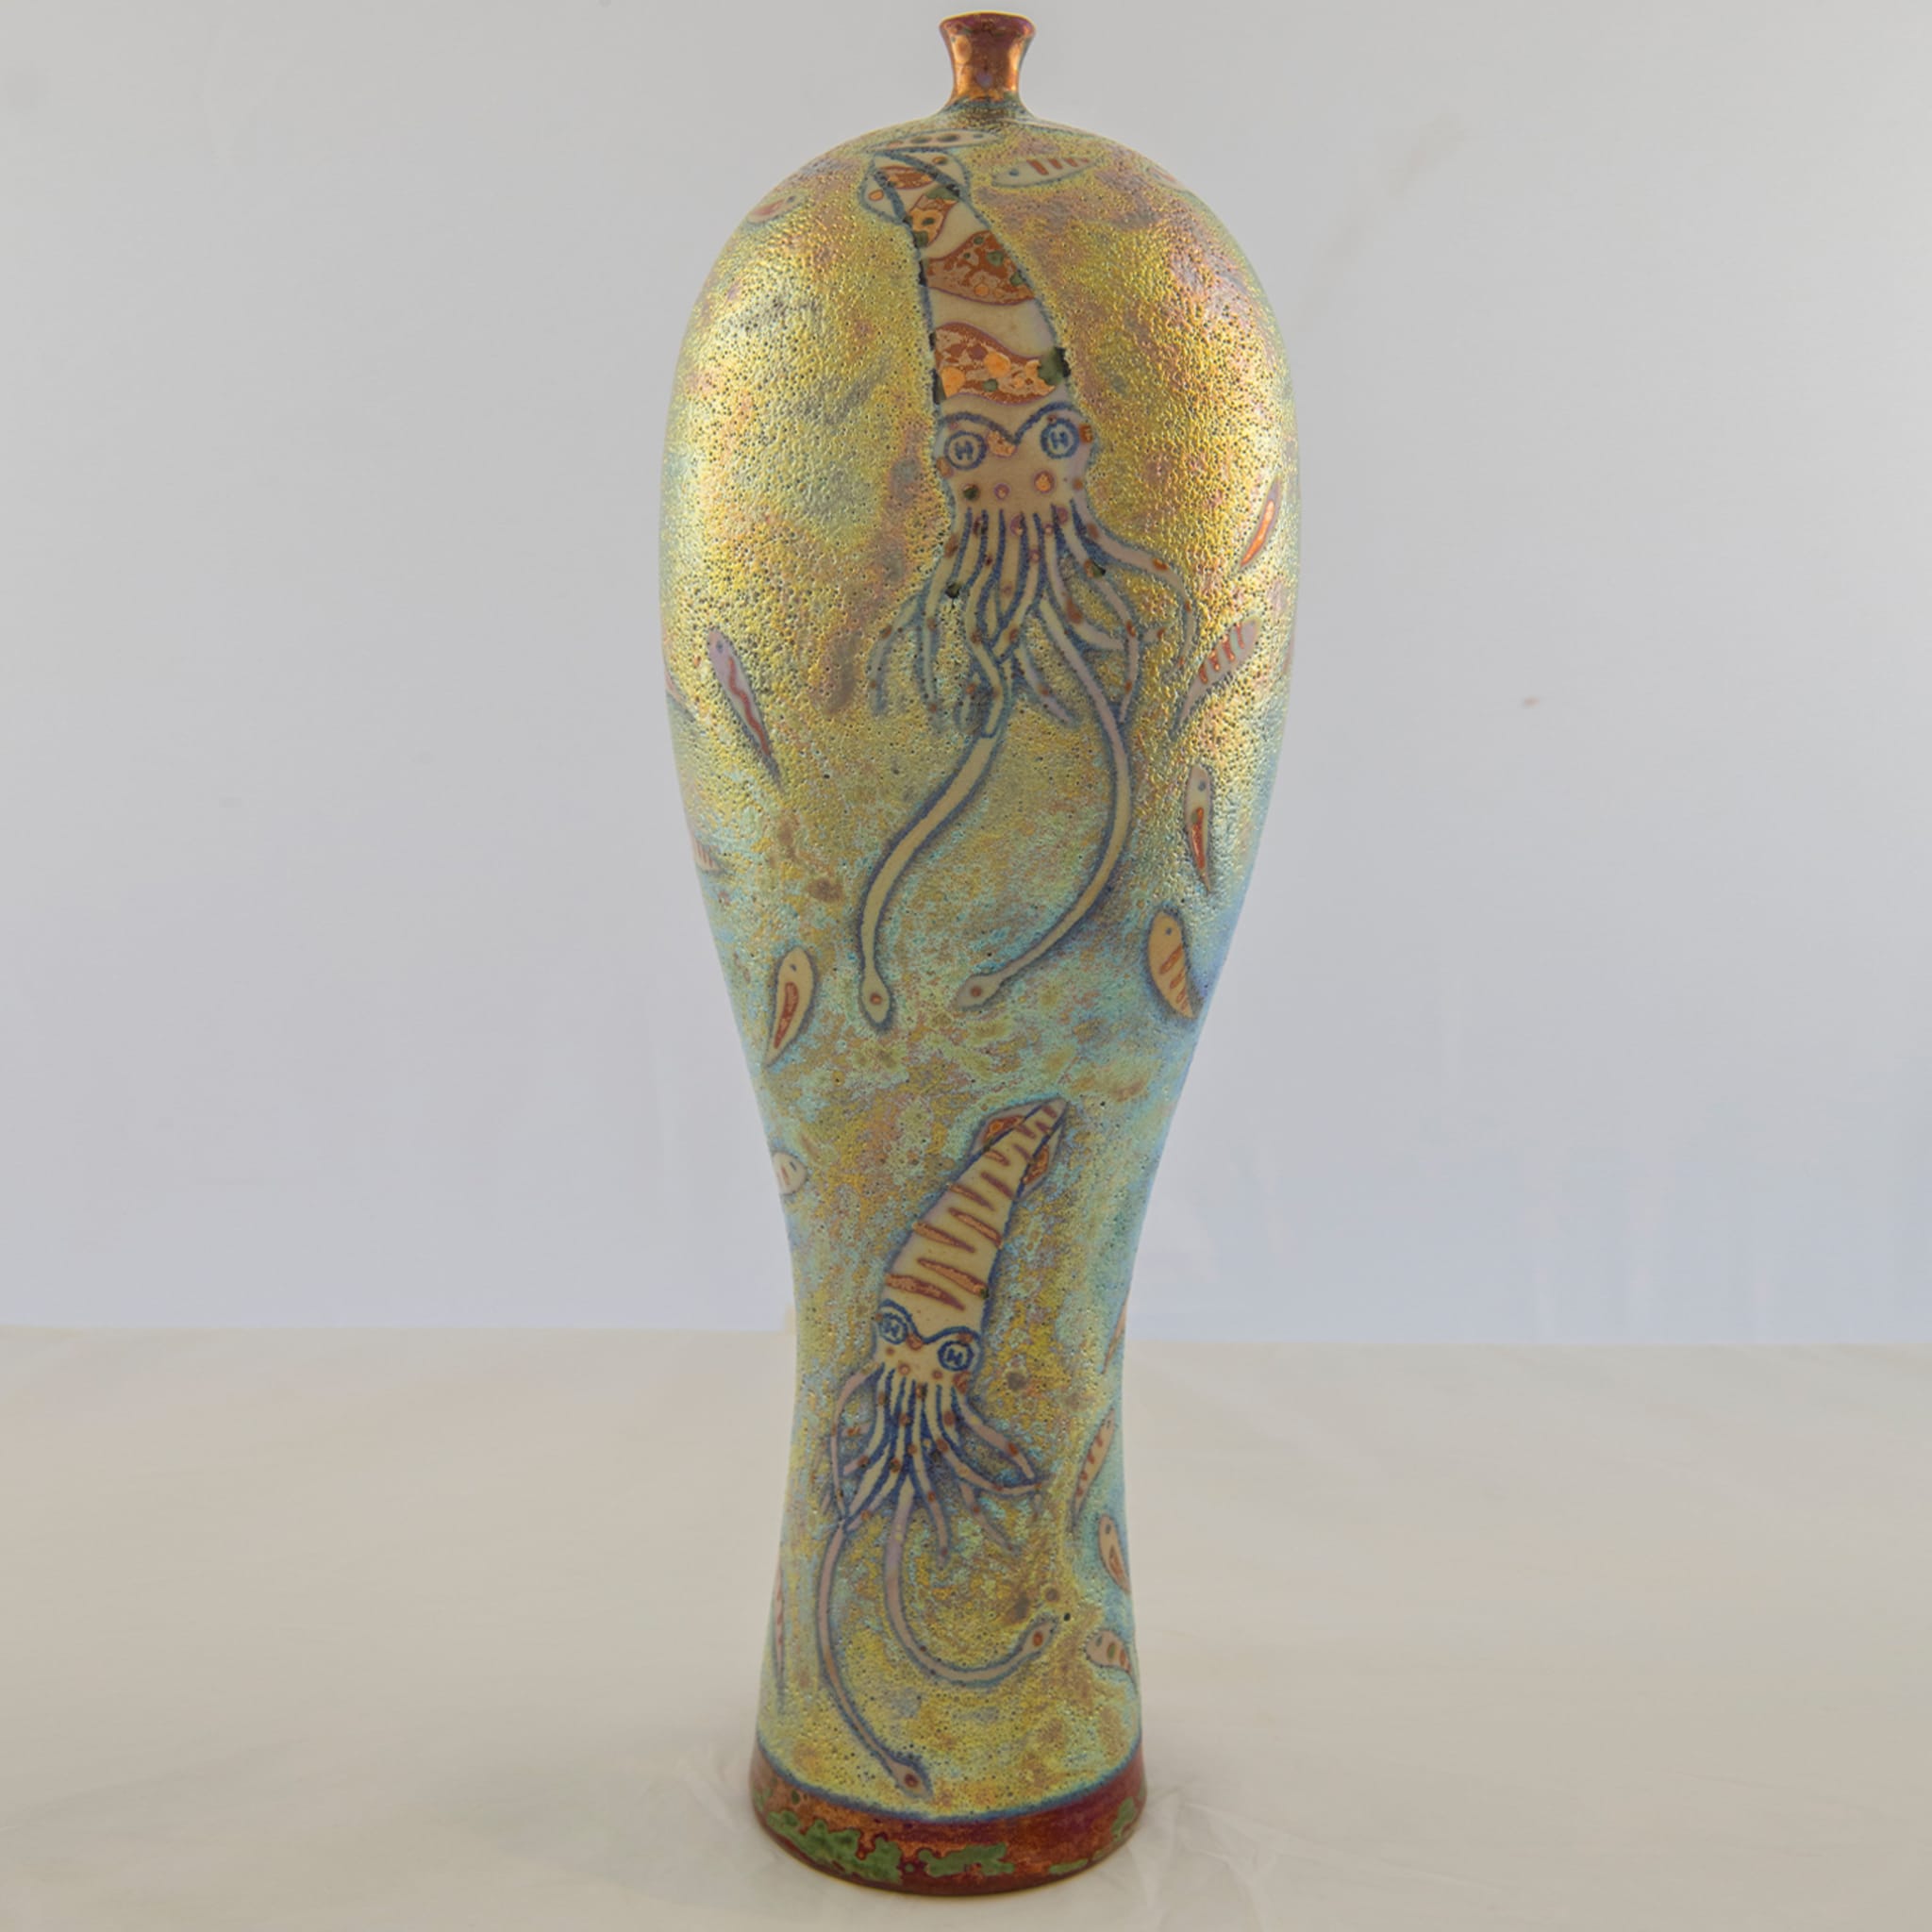 Sogno Illuminato di Pescatore Iridescent Polychrome Lustre Vase - Alternative view 1